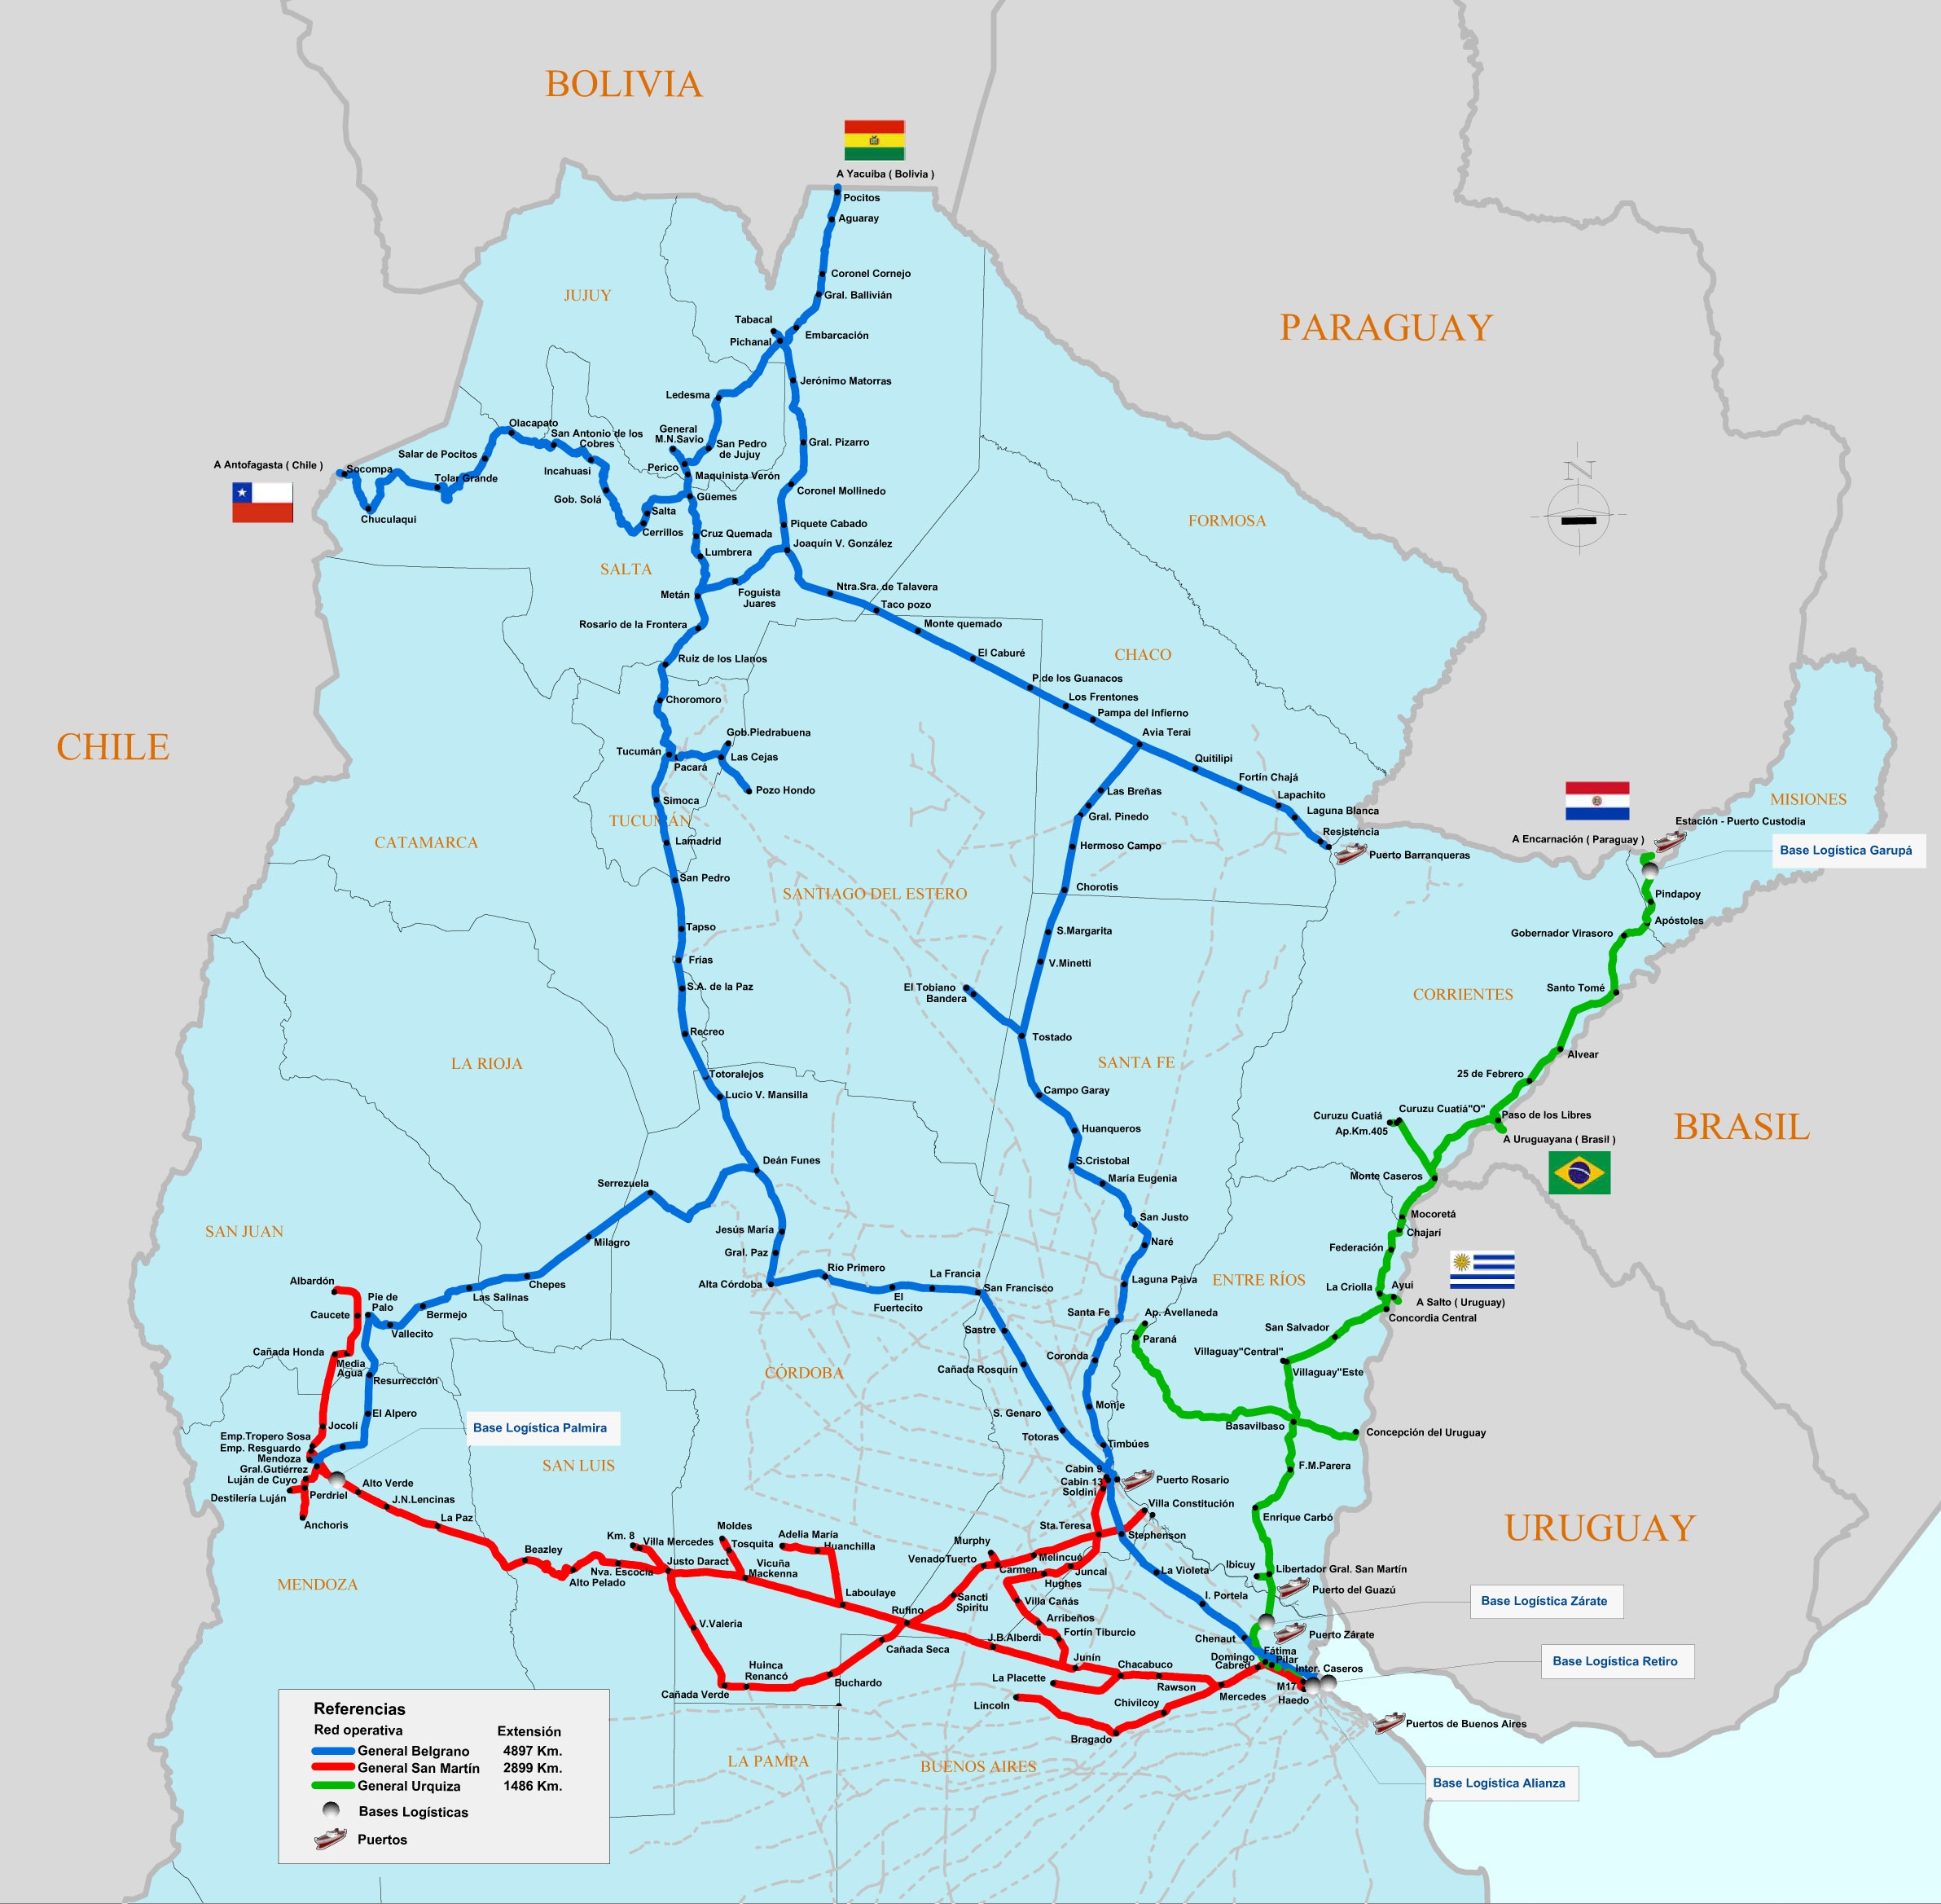 Plan Estratégico y de Negocios para el Desarrollo Logístico del Ferrocarril Belgrano Cargas